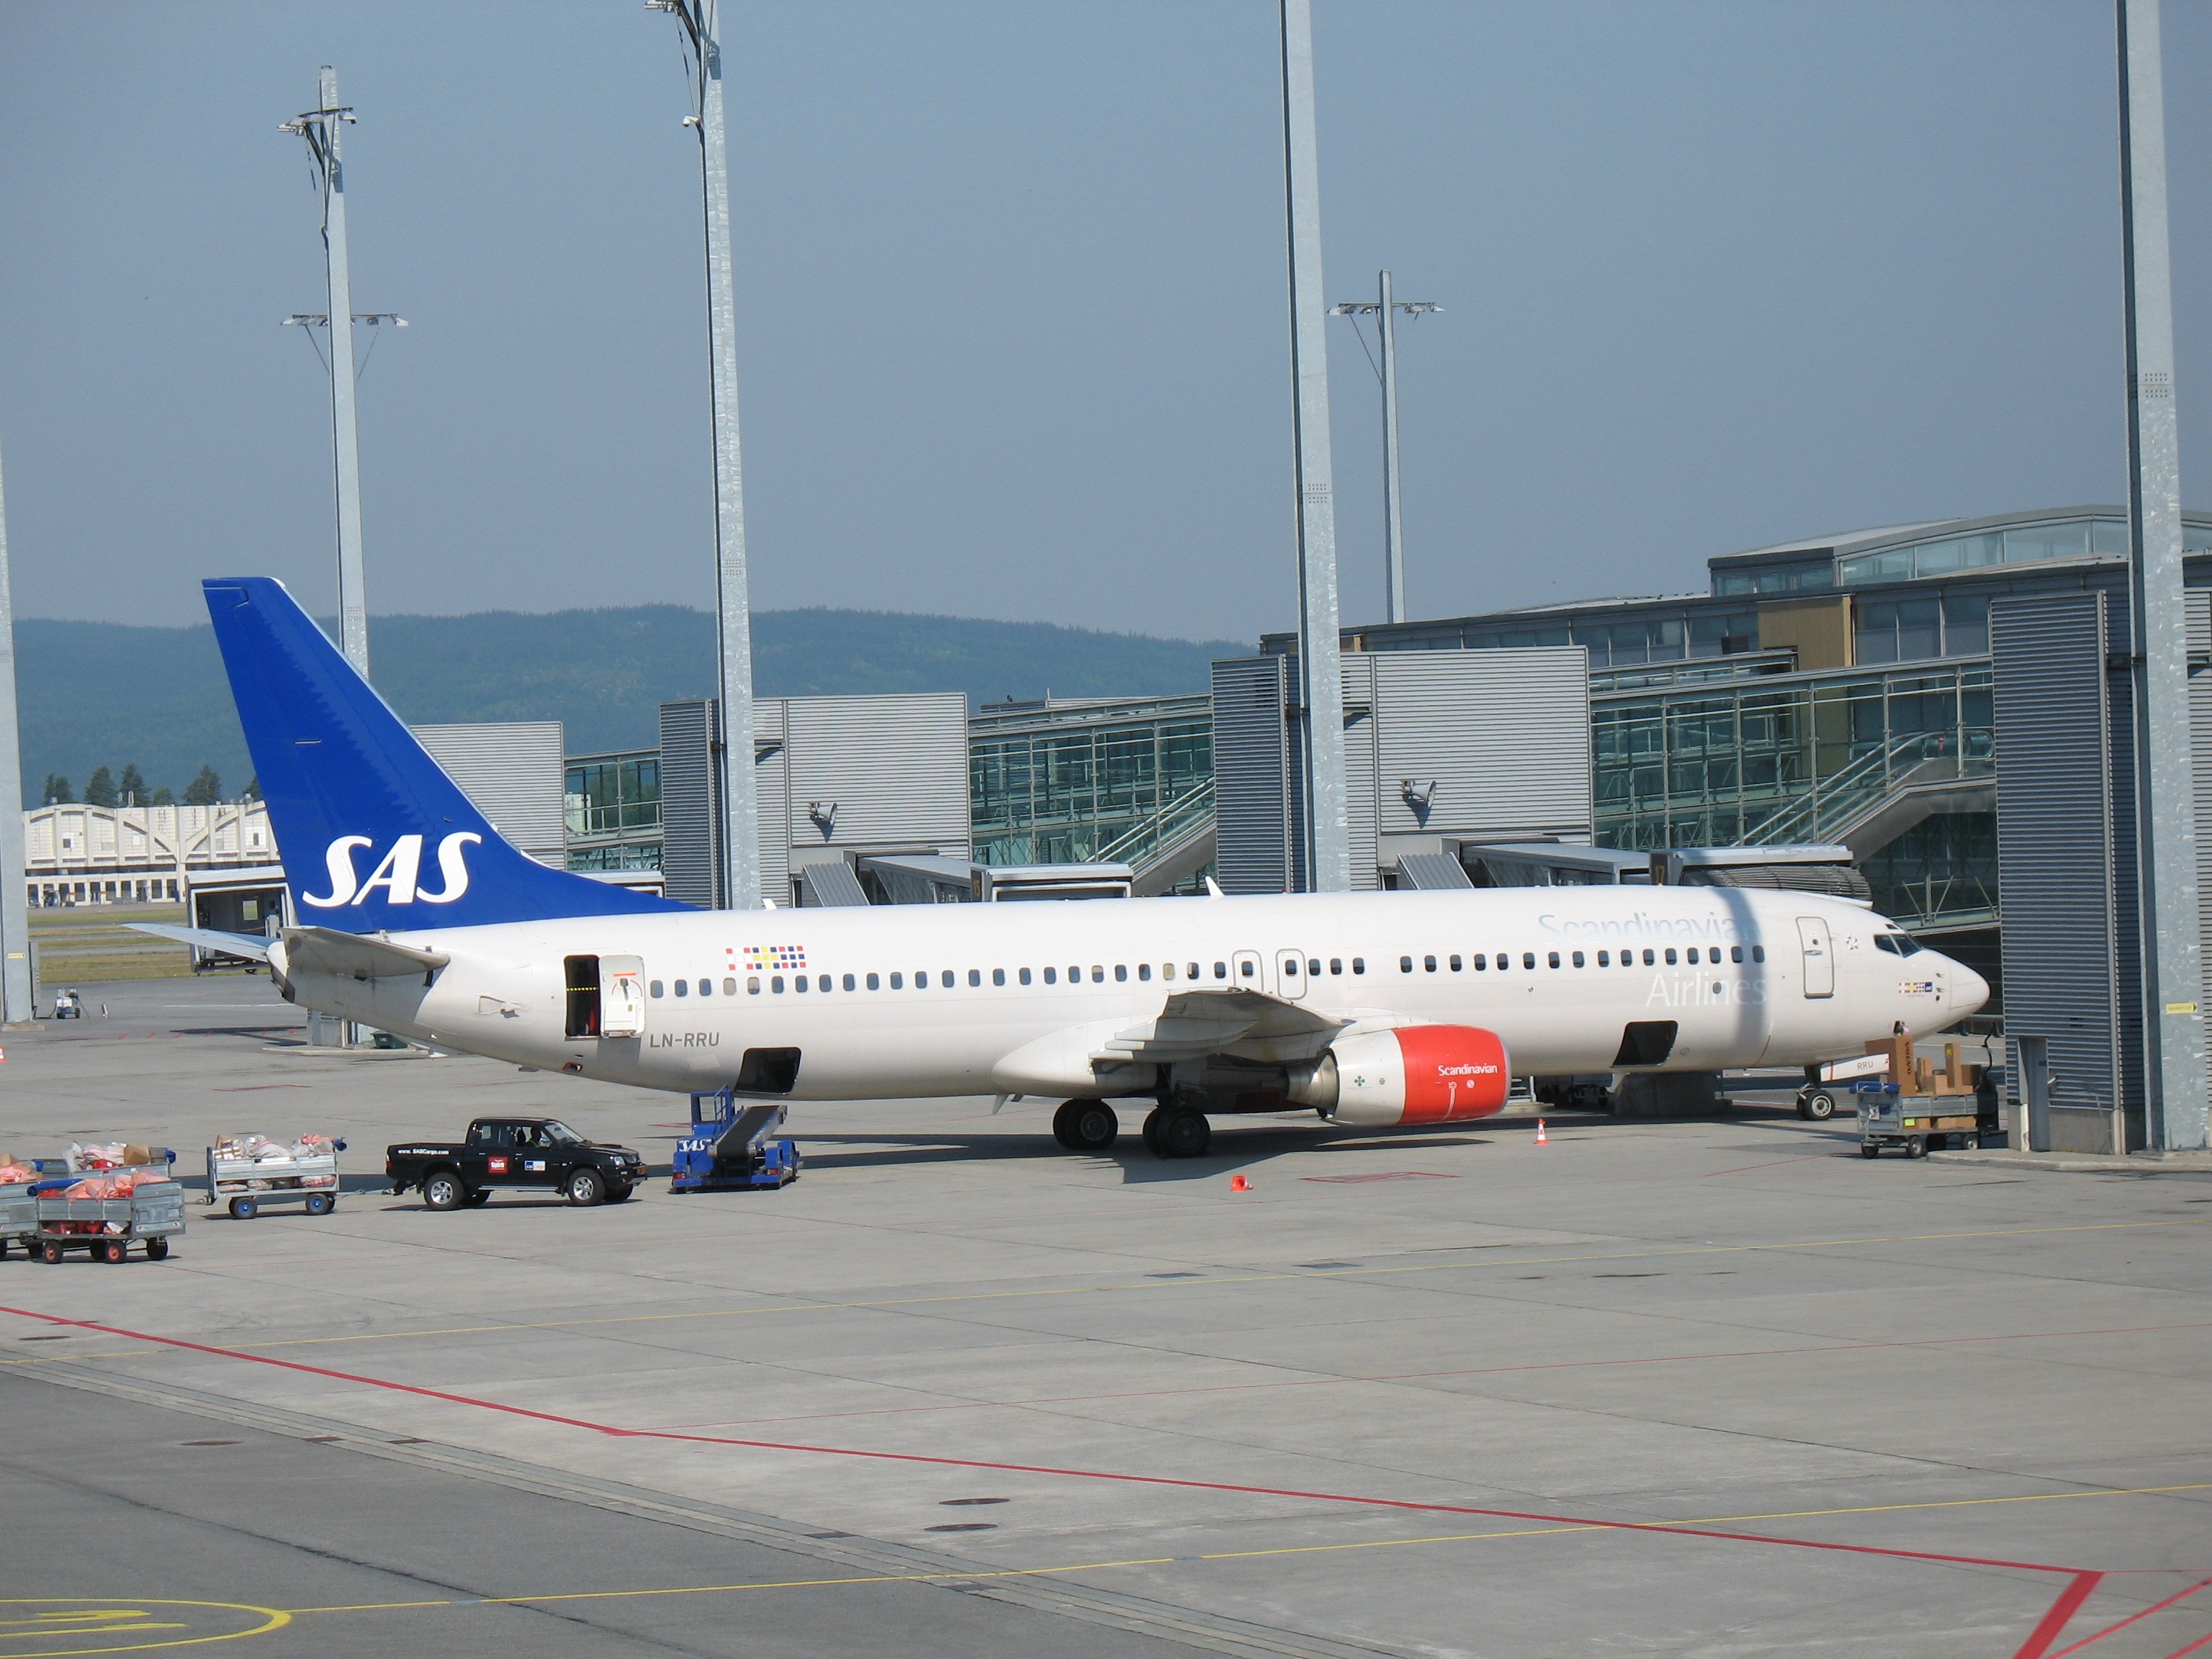 W imieniu pilotów negocjacji prowadzili przedstawiciele SAS Pilot Group. Organizacja skupia pracowników zrzeszonych w Duńskim Stowarzyszeniu Pilotów, Szwedzkim Stowarzyszeniu Pilotów, Norweskim Stowarzyszeniu Pilotów SAS oraz Norweskim Stowarzyszeniu Lotnictwa. W strukturach związków znajdują się przedstawiciele m.in. LO, YS i Parat.